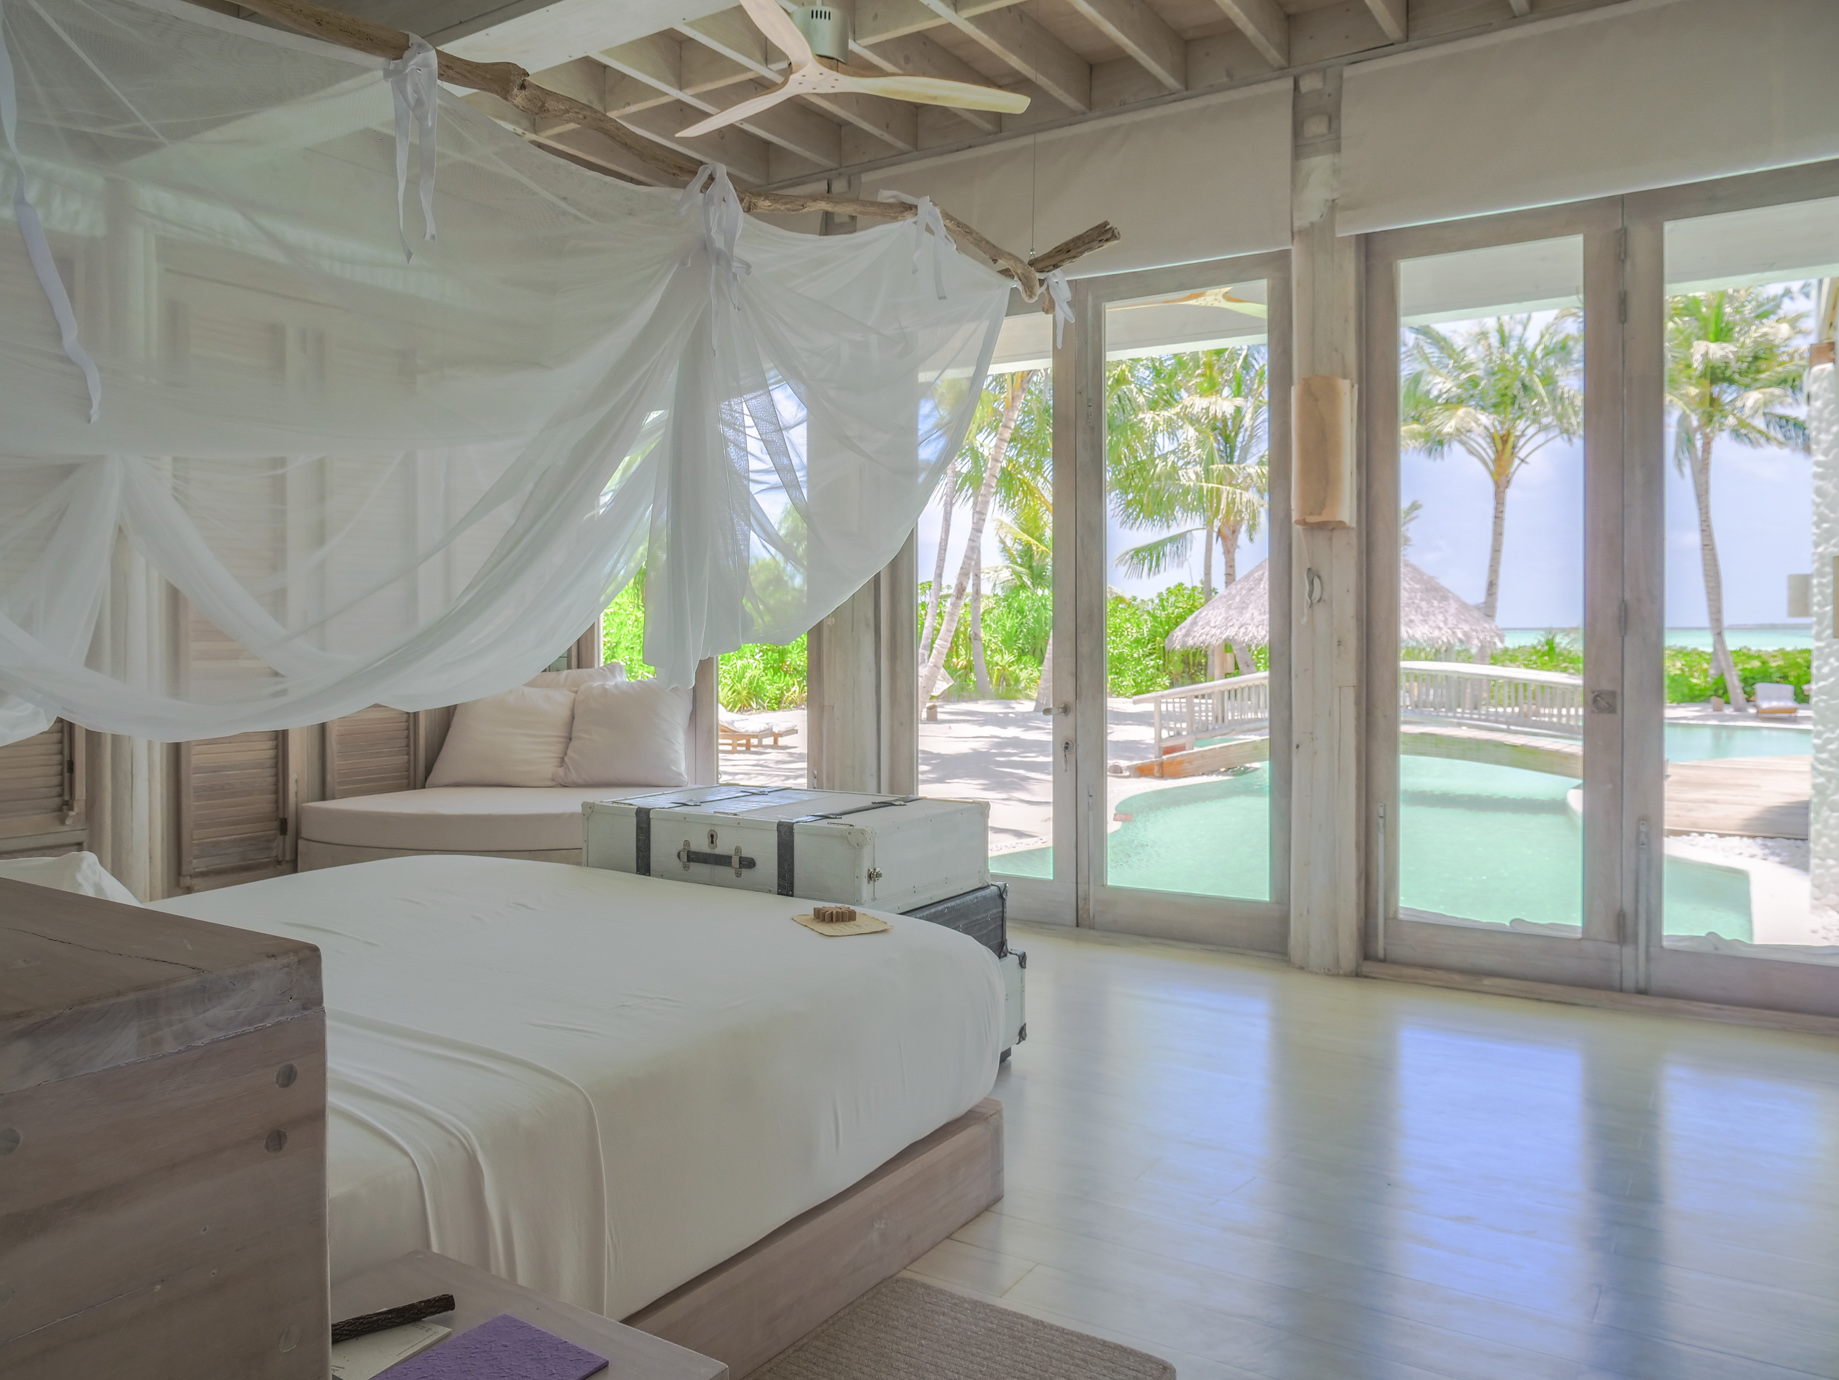 Soneva Jani Resort – Noonu Atoll, Medhufaru, Maldives – 4 Bedroom Island Reserve Villa Bedroom